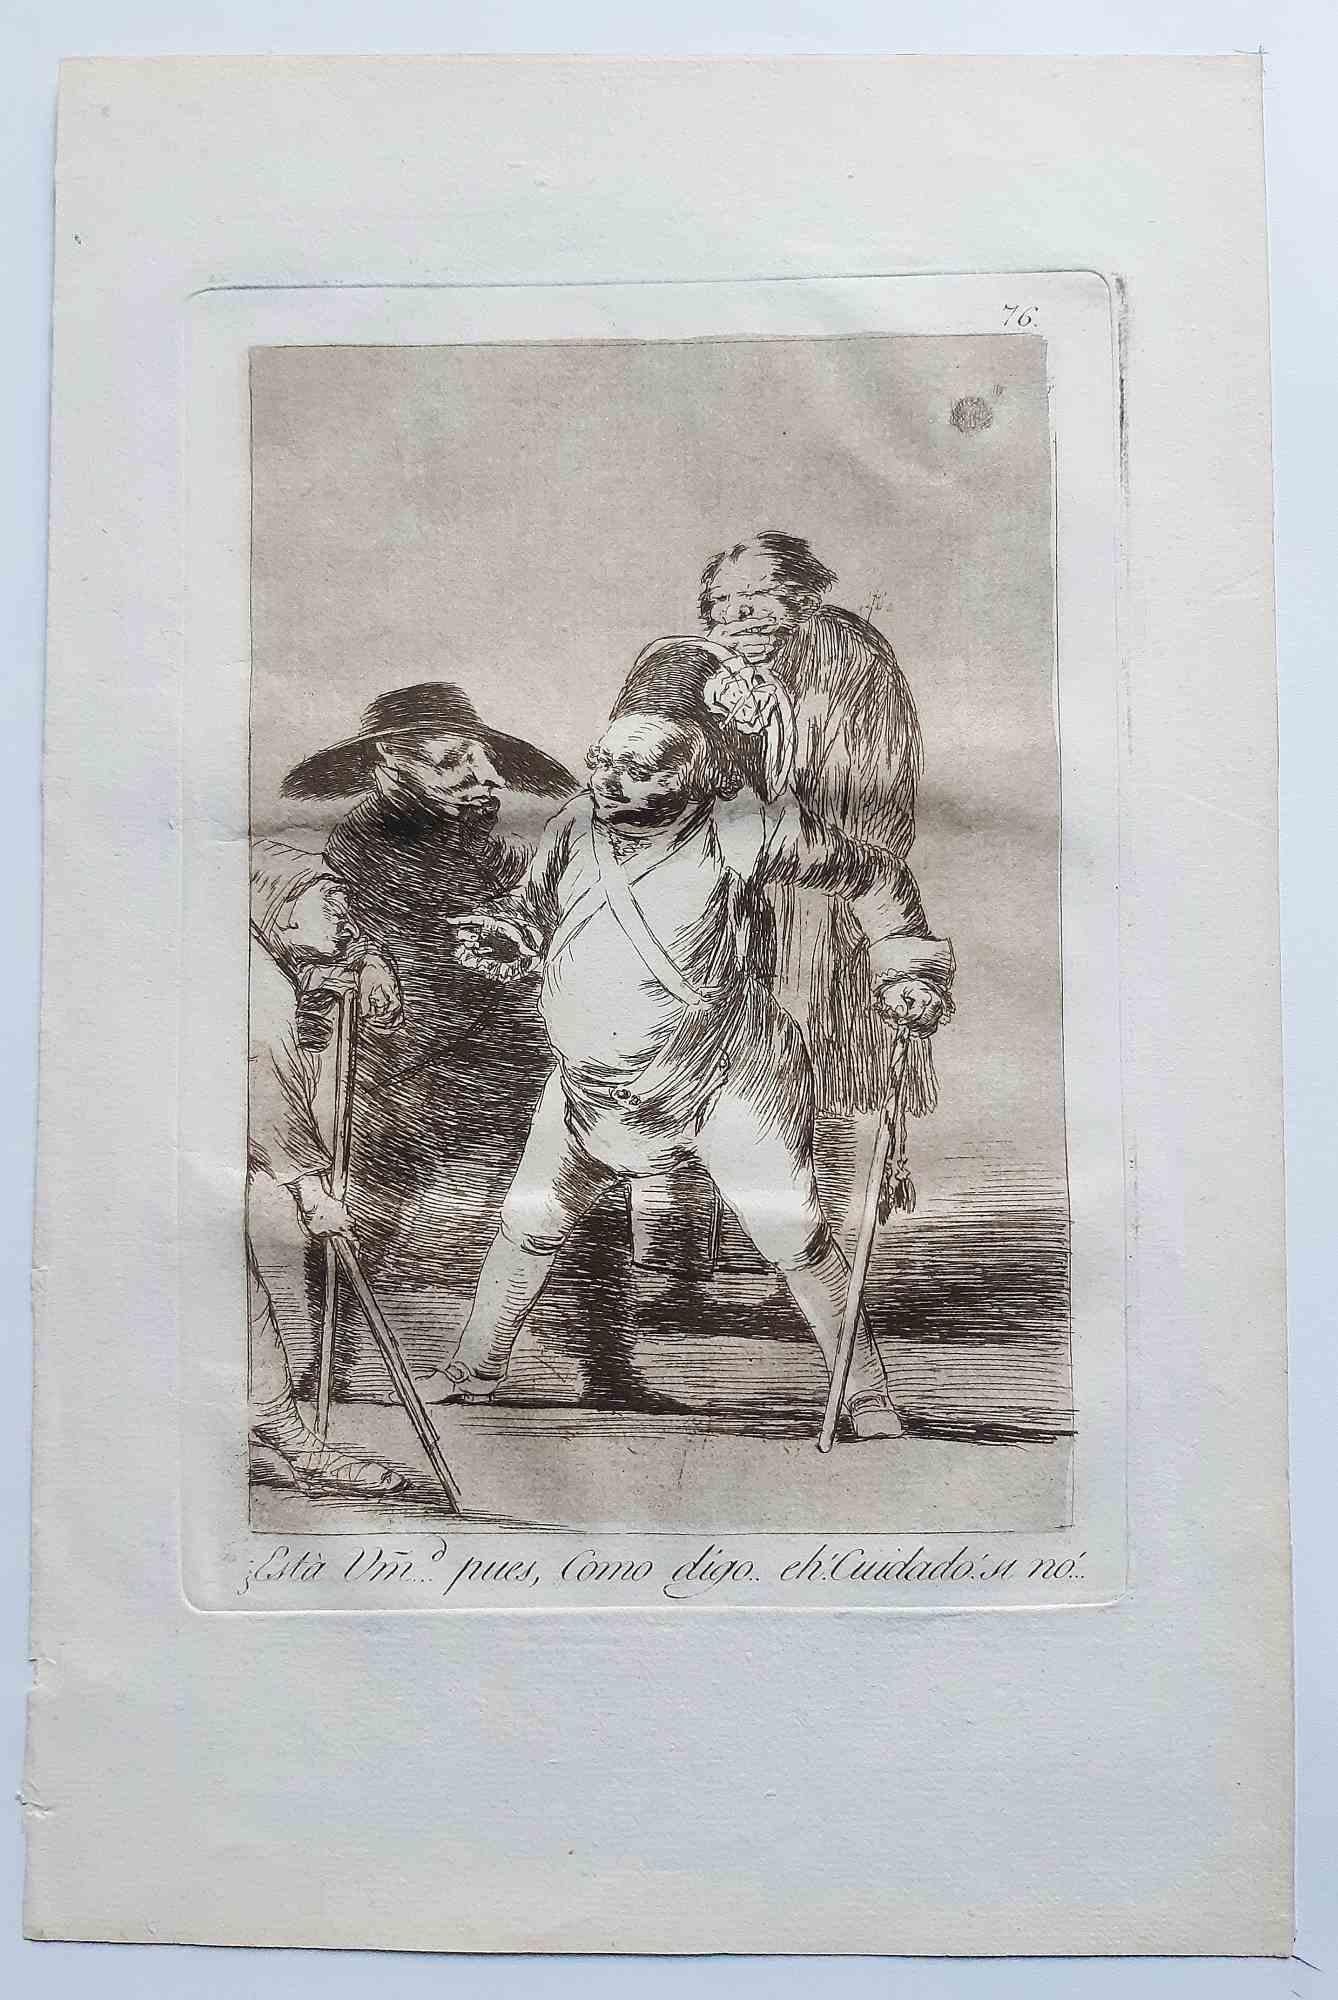 Esta usted... pues... eh!como digo... cuidado aus Los Caprichos ist ein originales Kunstwerk des Künstlers Francisco Goya, das 1799 zum ersten Mal veröffentlicht wurde.

Radierung und Aquatinta auf Papier.

Die Radierung ist Teil der Erstausgabe von